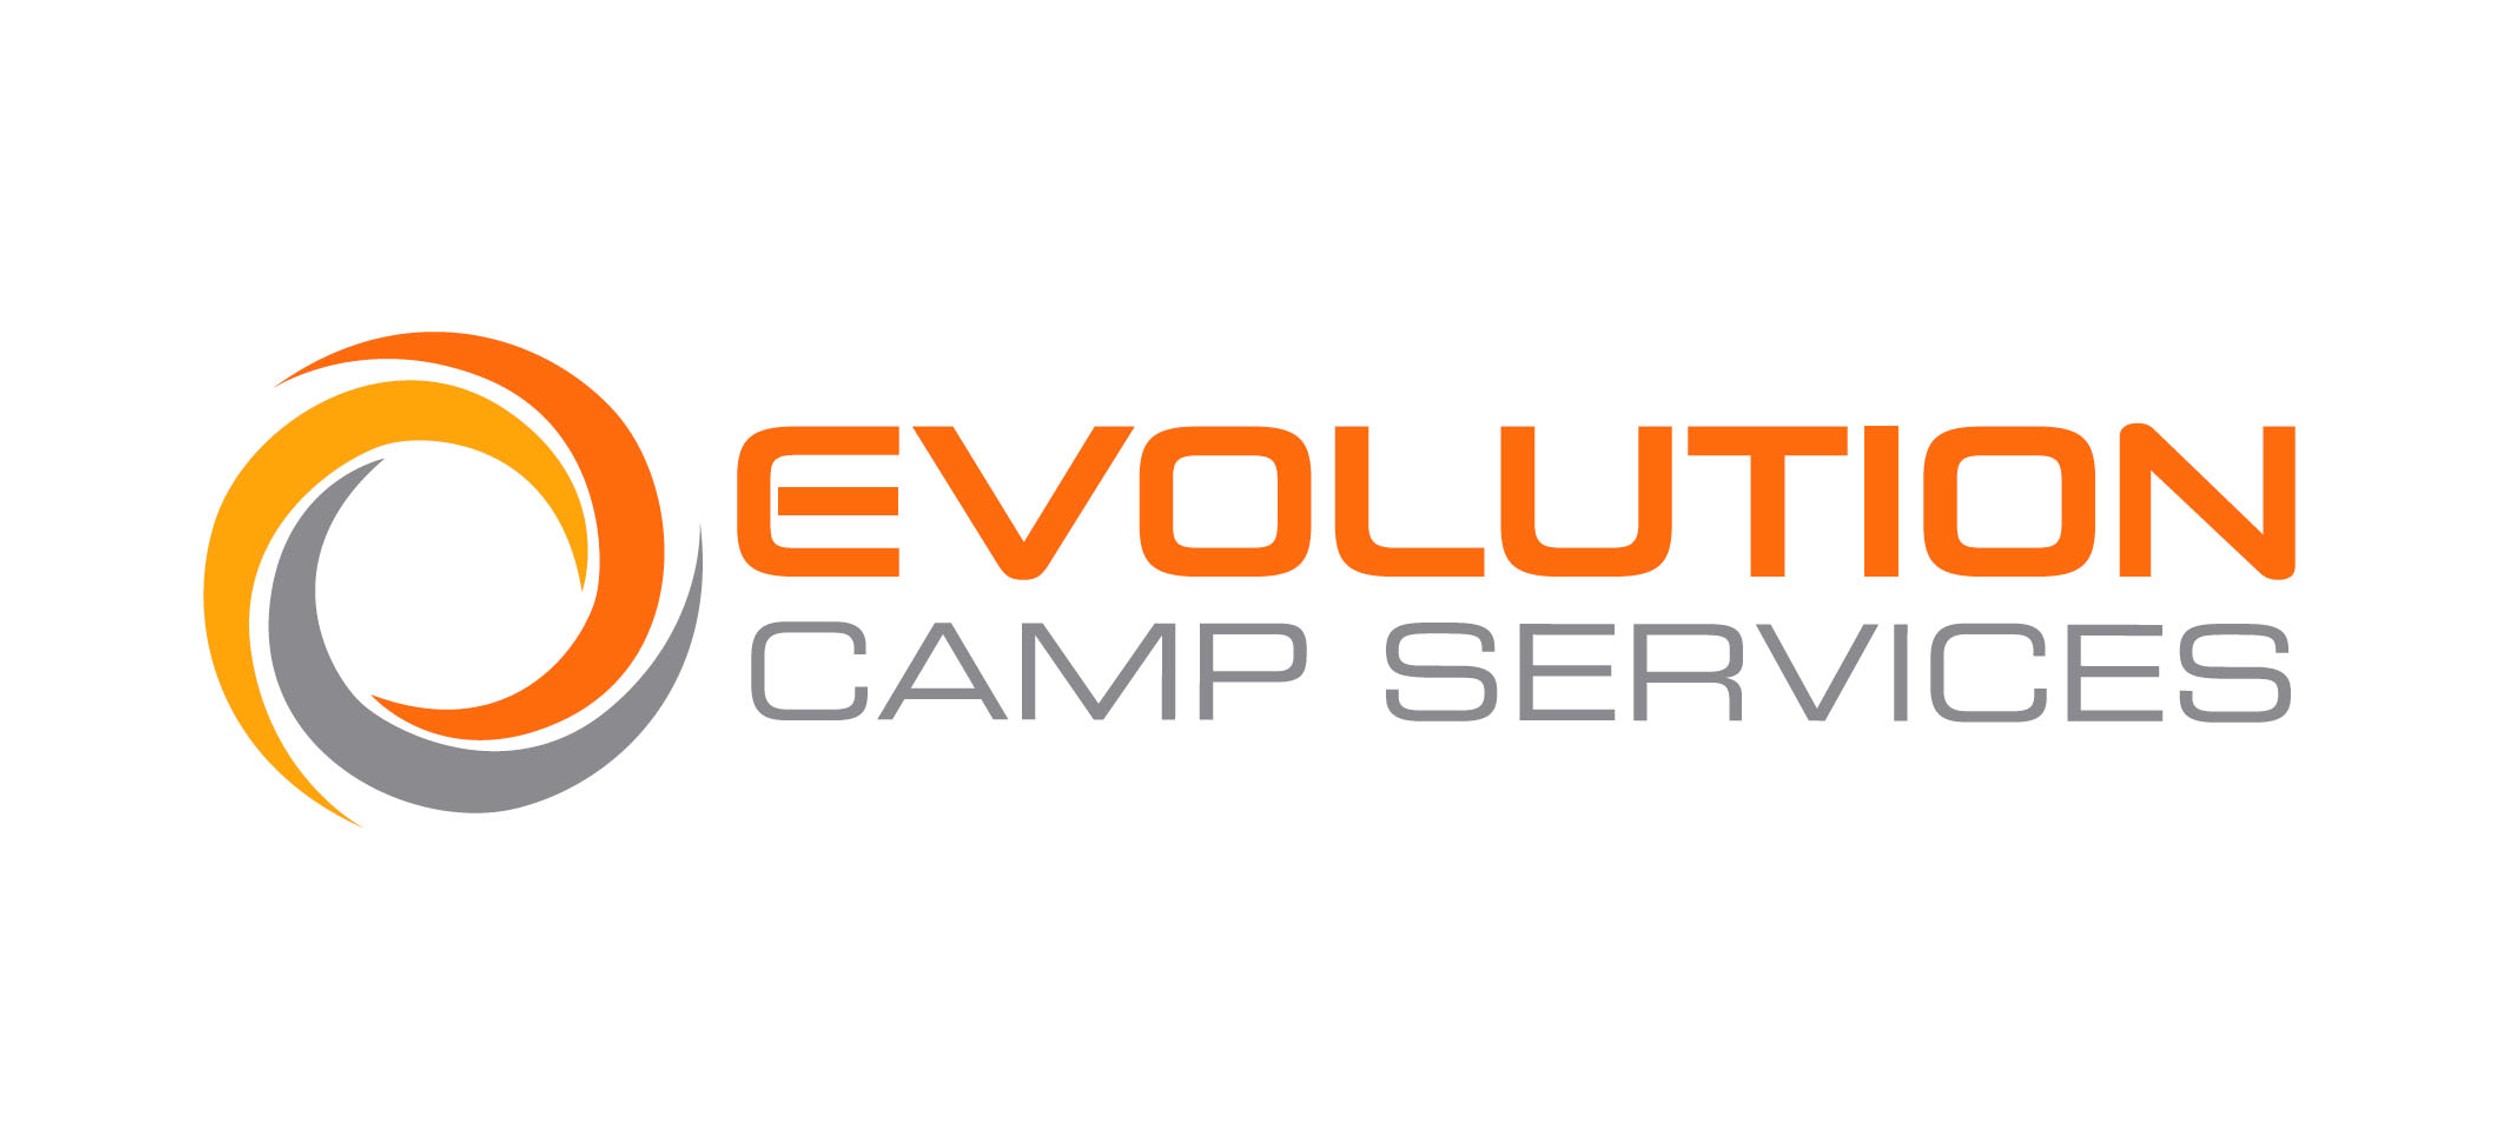 Evolution Camp Services Inc logo